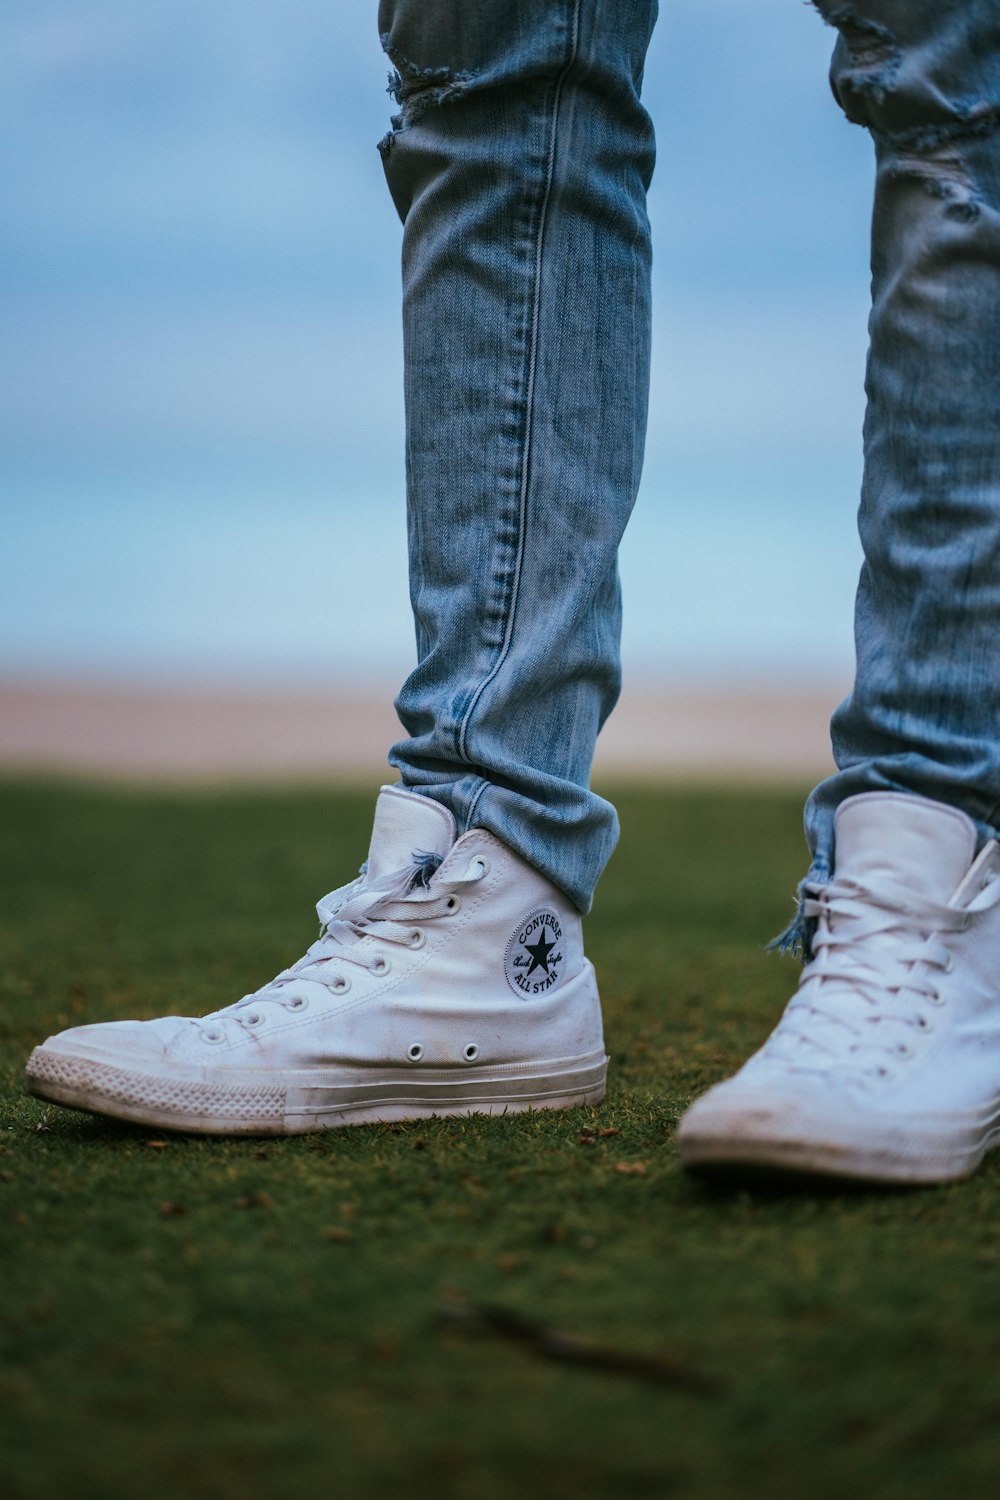 Foto Hombre con zapatillas altas converse blancas – Imagen Florida gratis en Unsplash